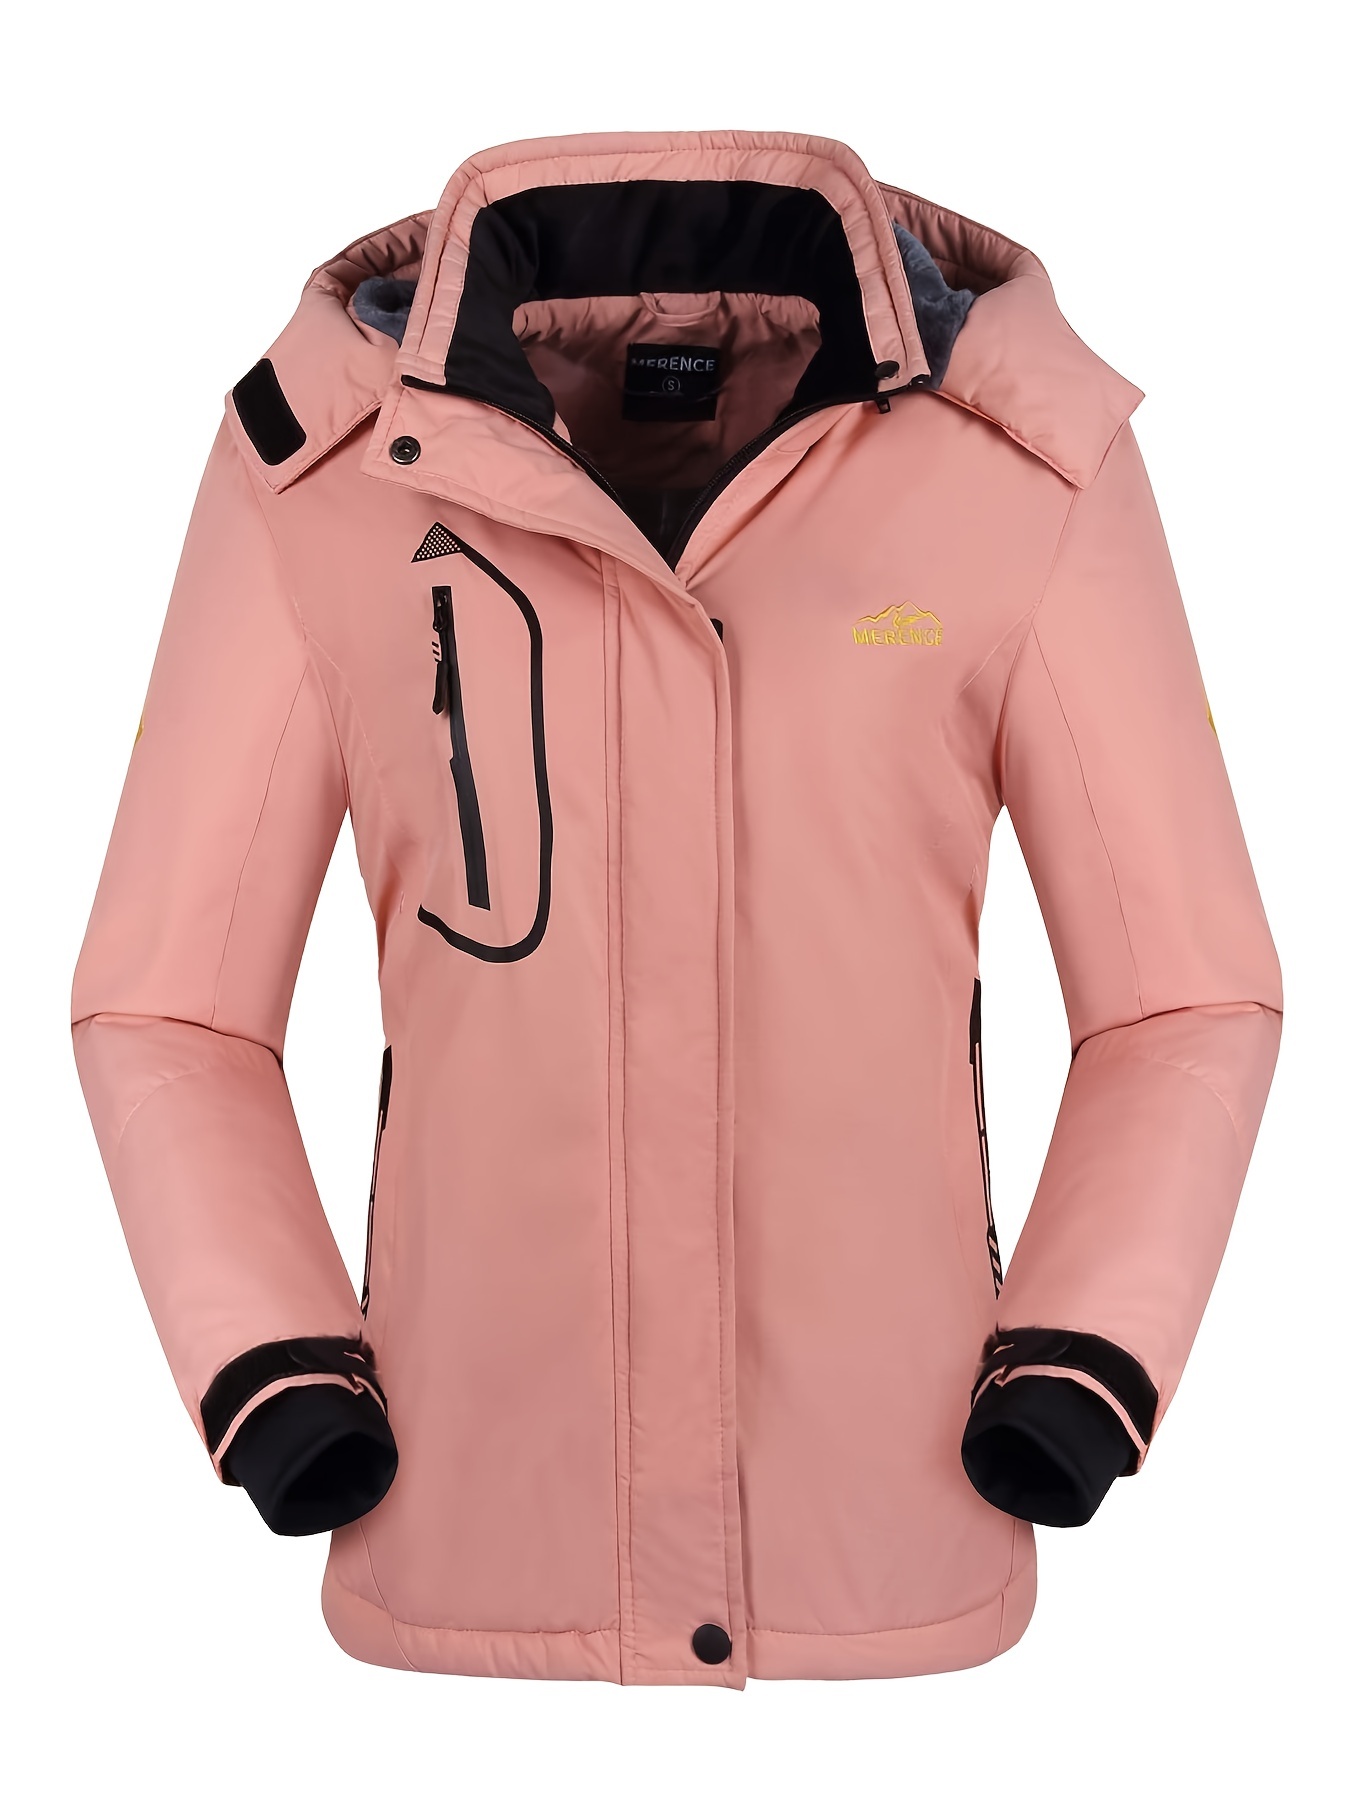 Women's Ski Suit, Windproof Waterproof Ski Jacket & Snow Bib Overralls,  Women's Outdoor Clothing